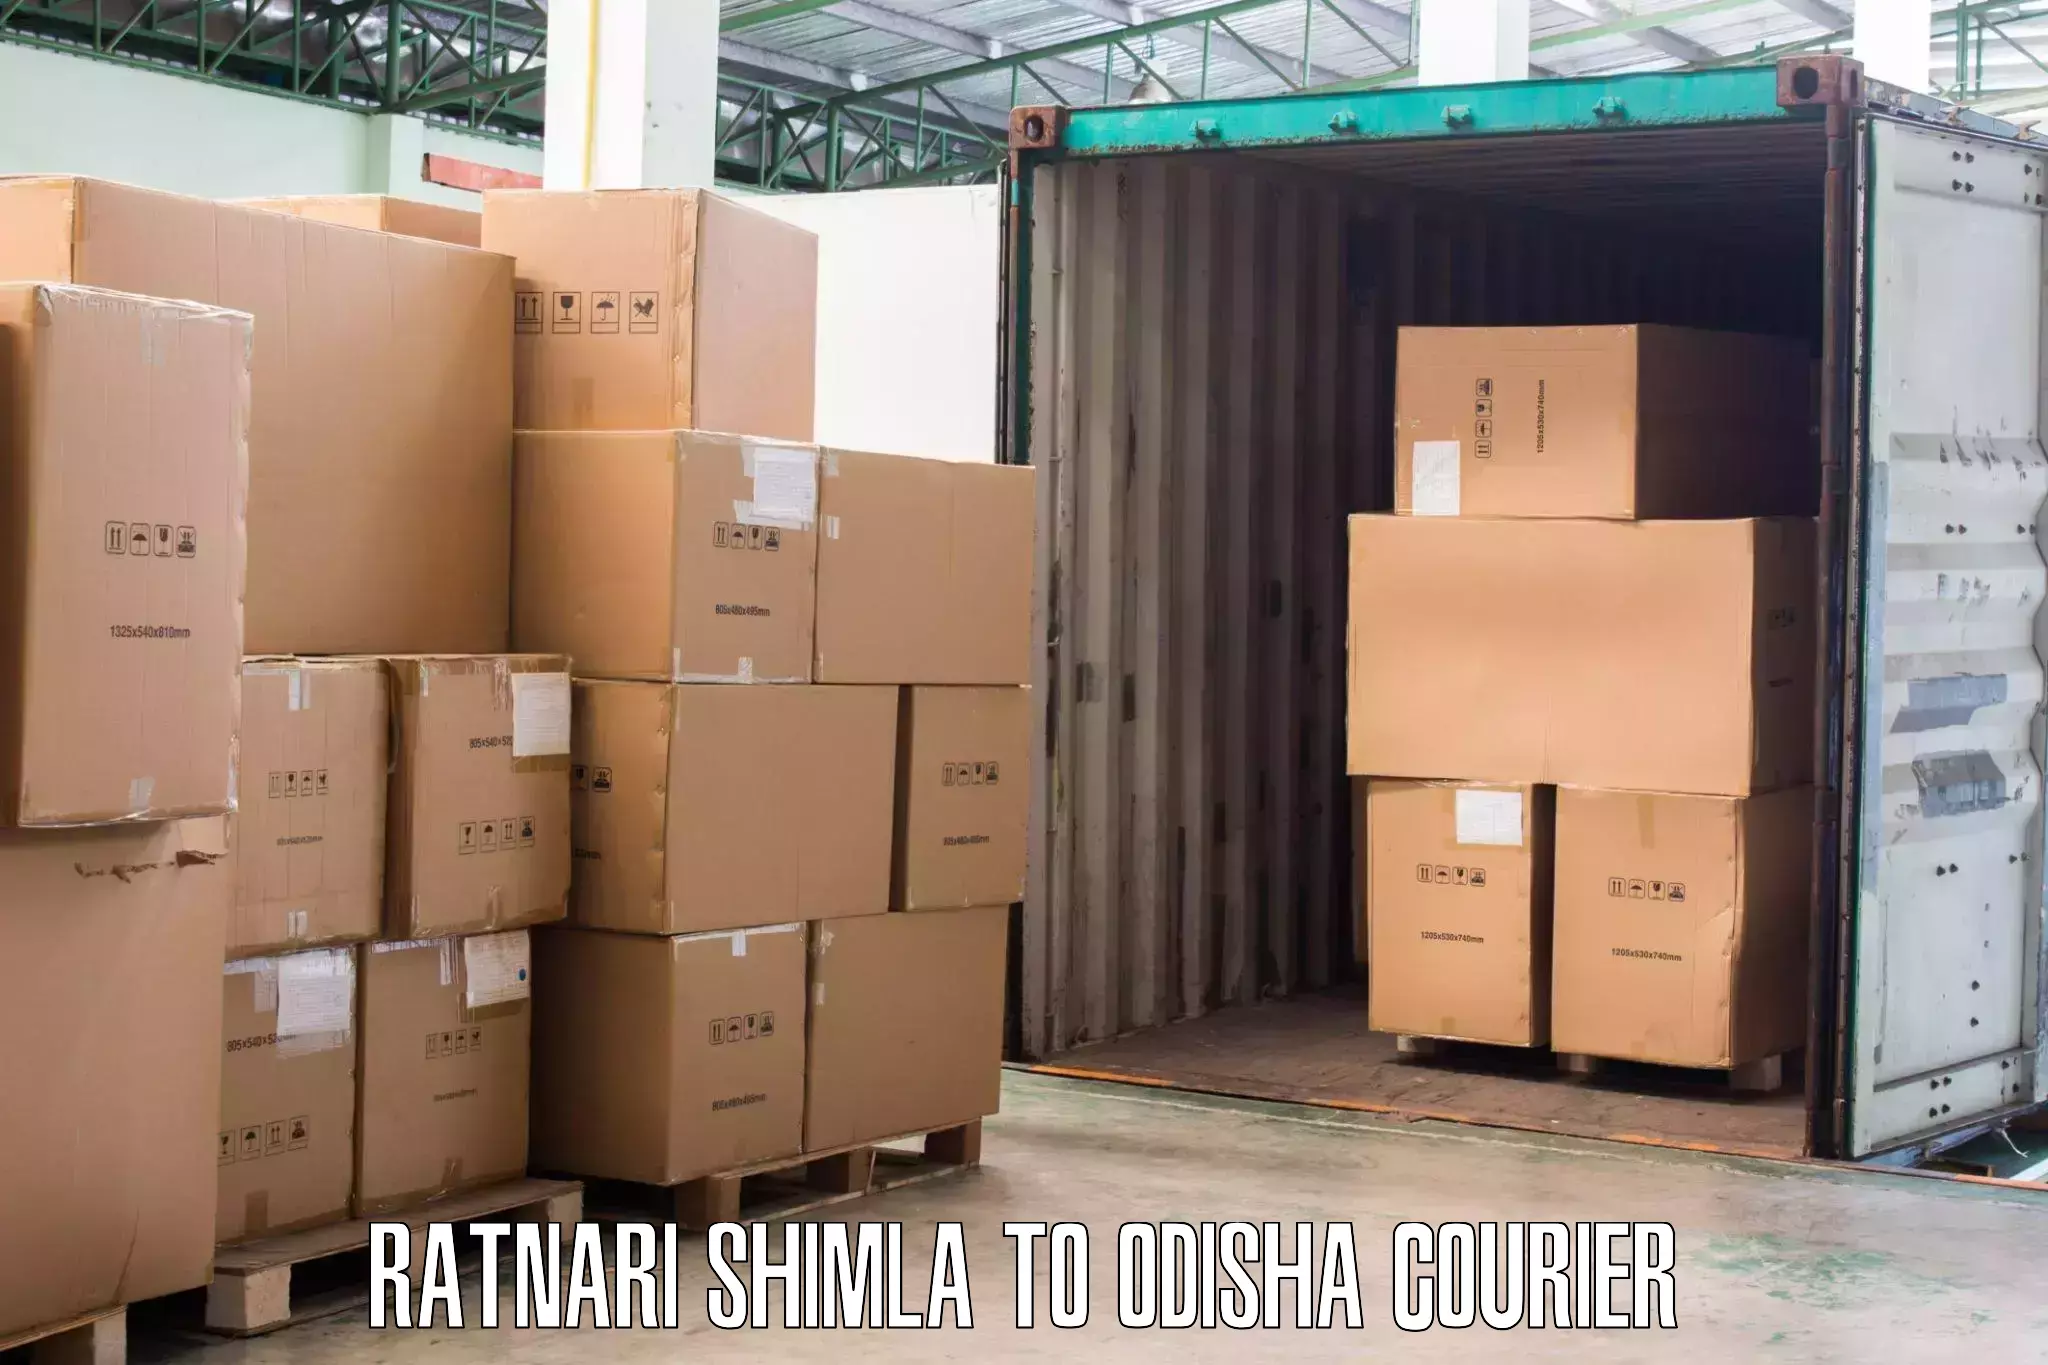 Professional movers and packers Ratnari Shimla to Astaranga